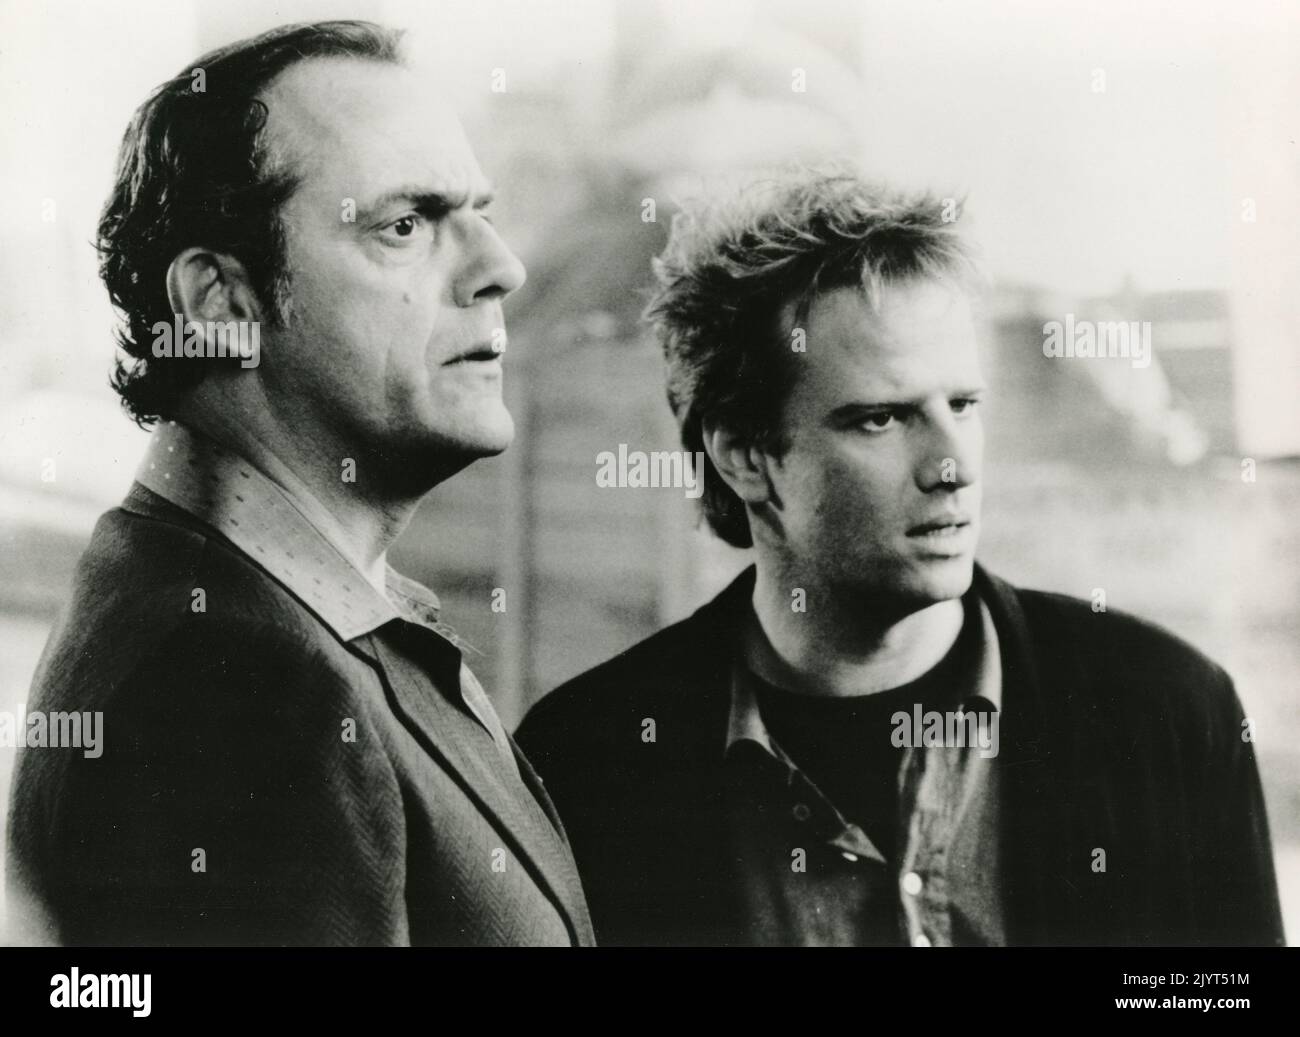 Der französische Schauspieler Christopher Lambert (links) und der Schauspieler Christopher Lloyd im Film Warum ich?, USA 1990 Stockfoto